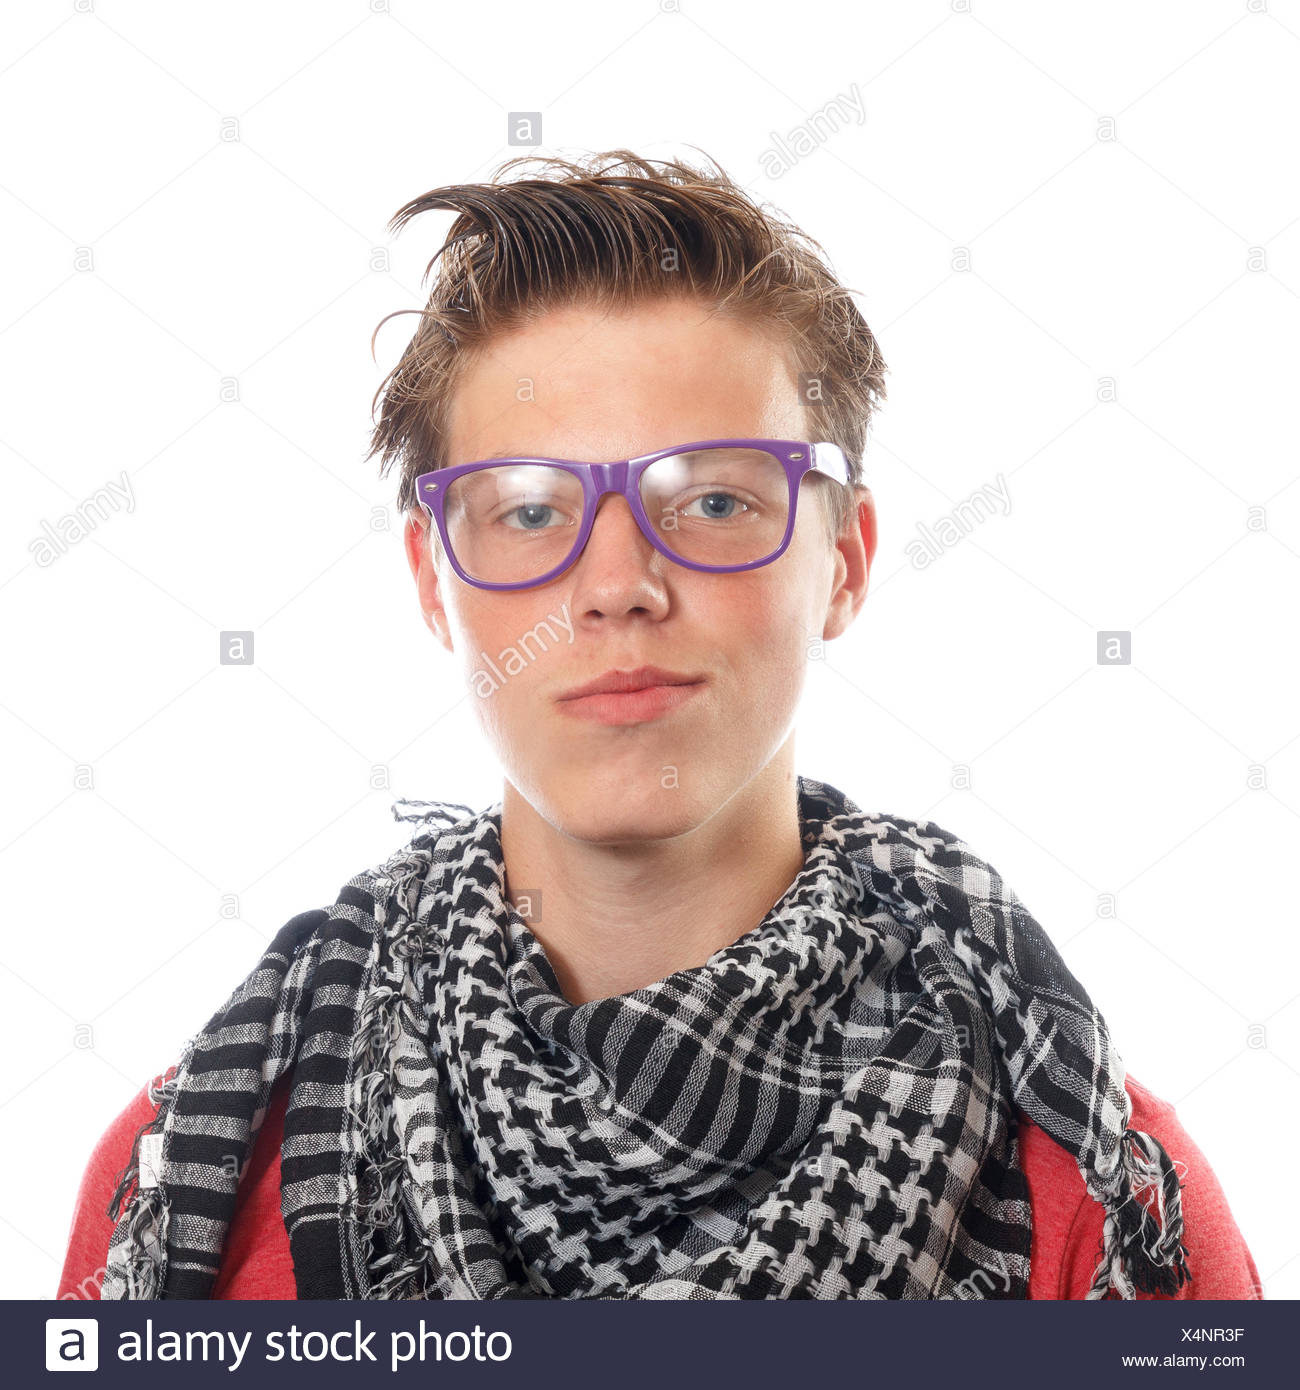 Un garçon ado hipster avec un foulard et des lunettes Photo Stock - Alamy